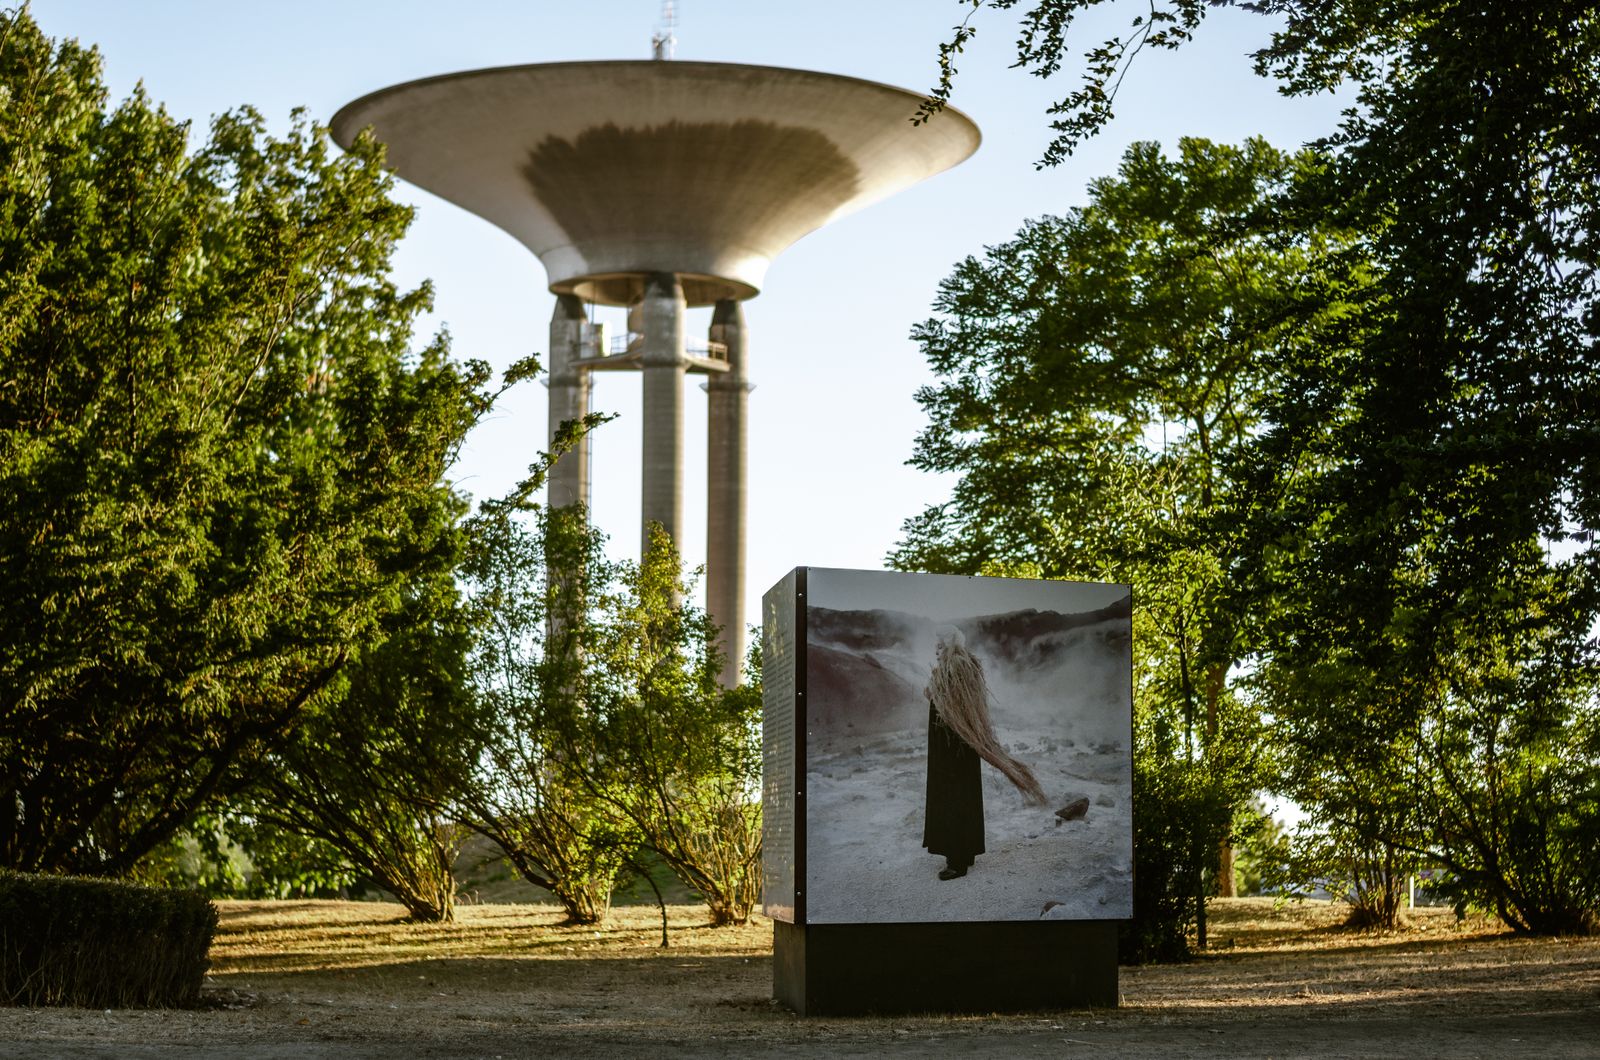 Image from Landskrona Foto Festival 2018